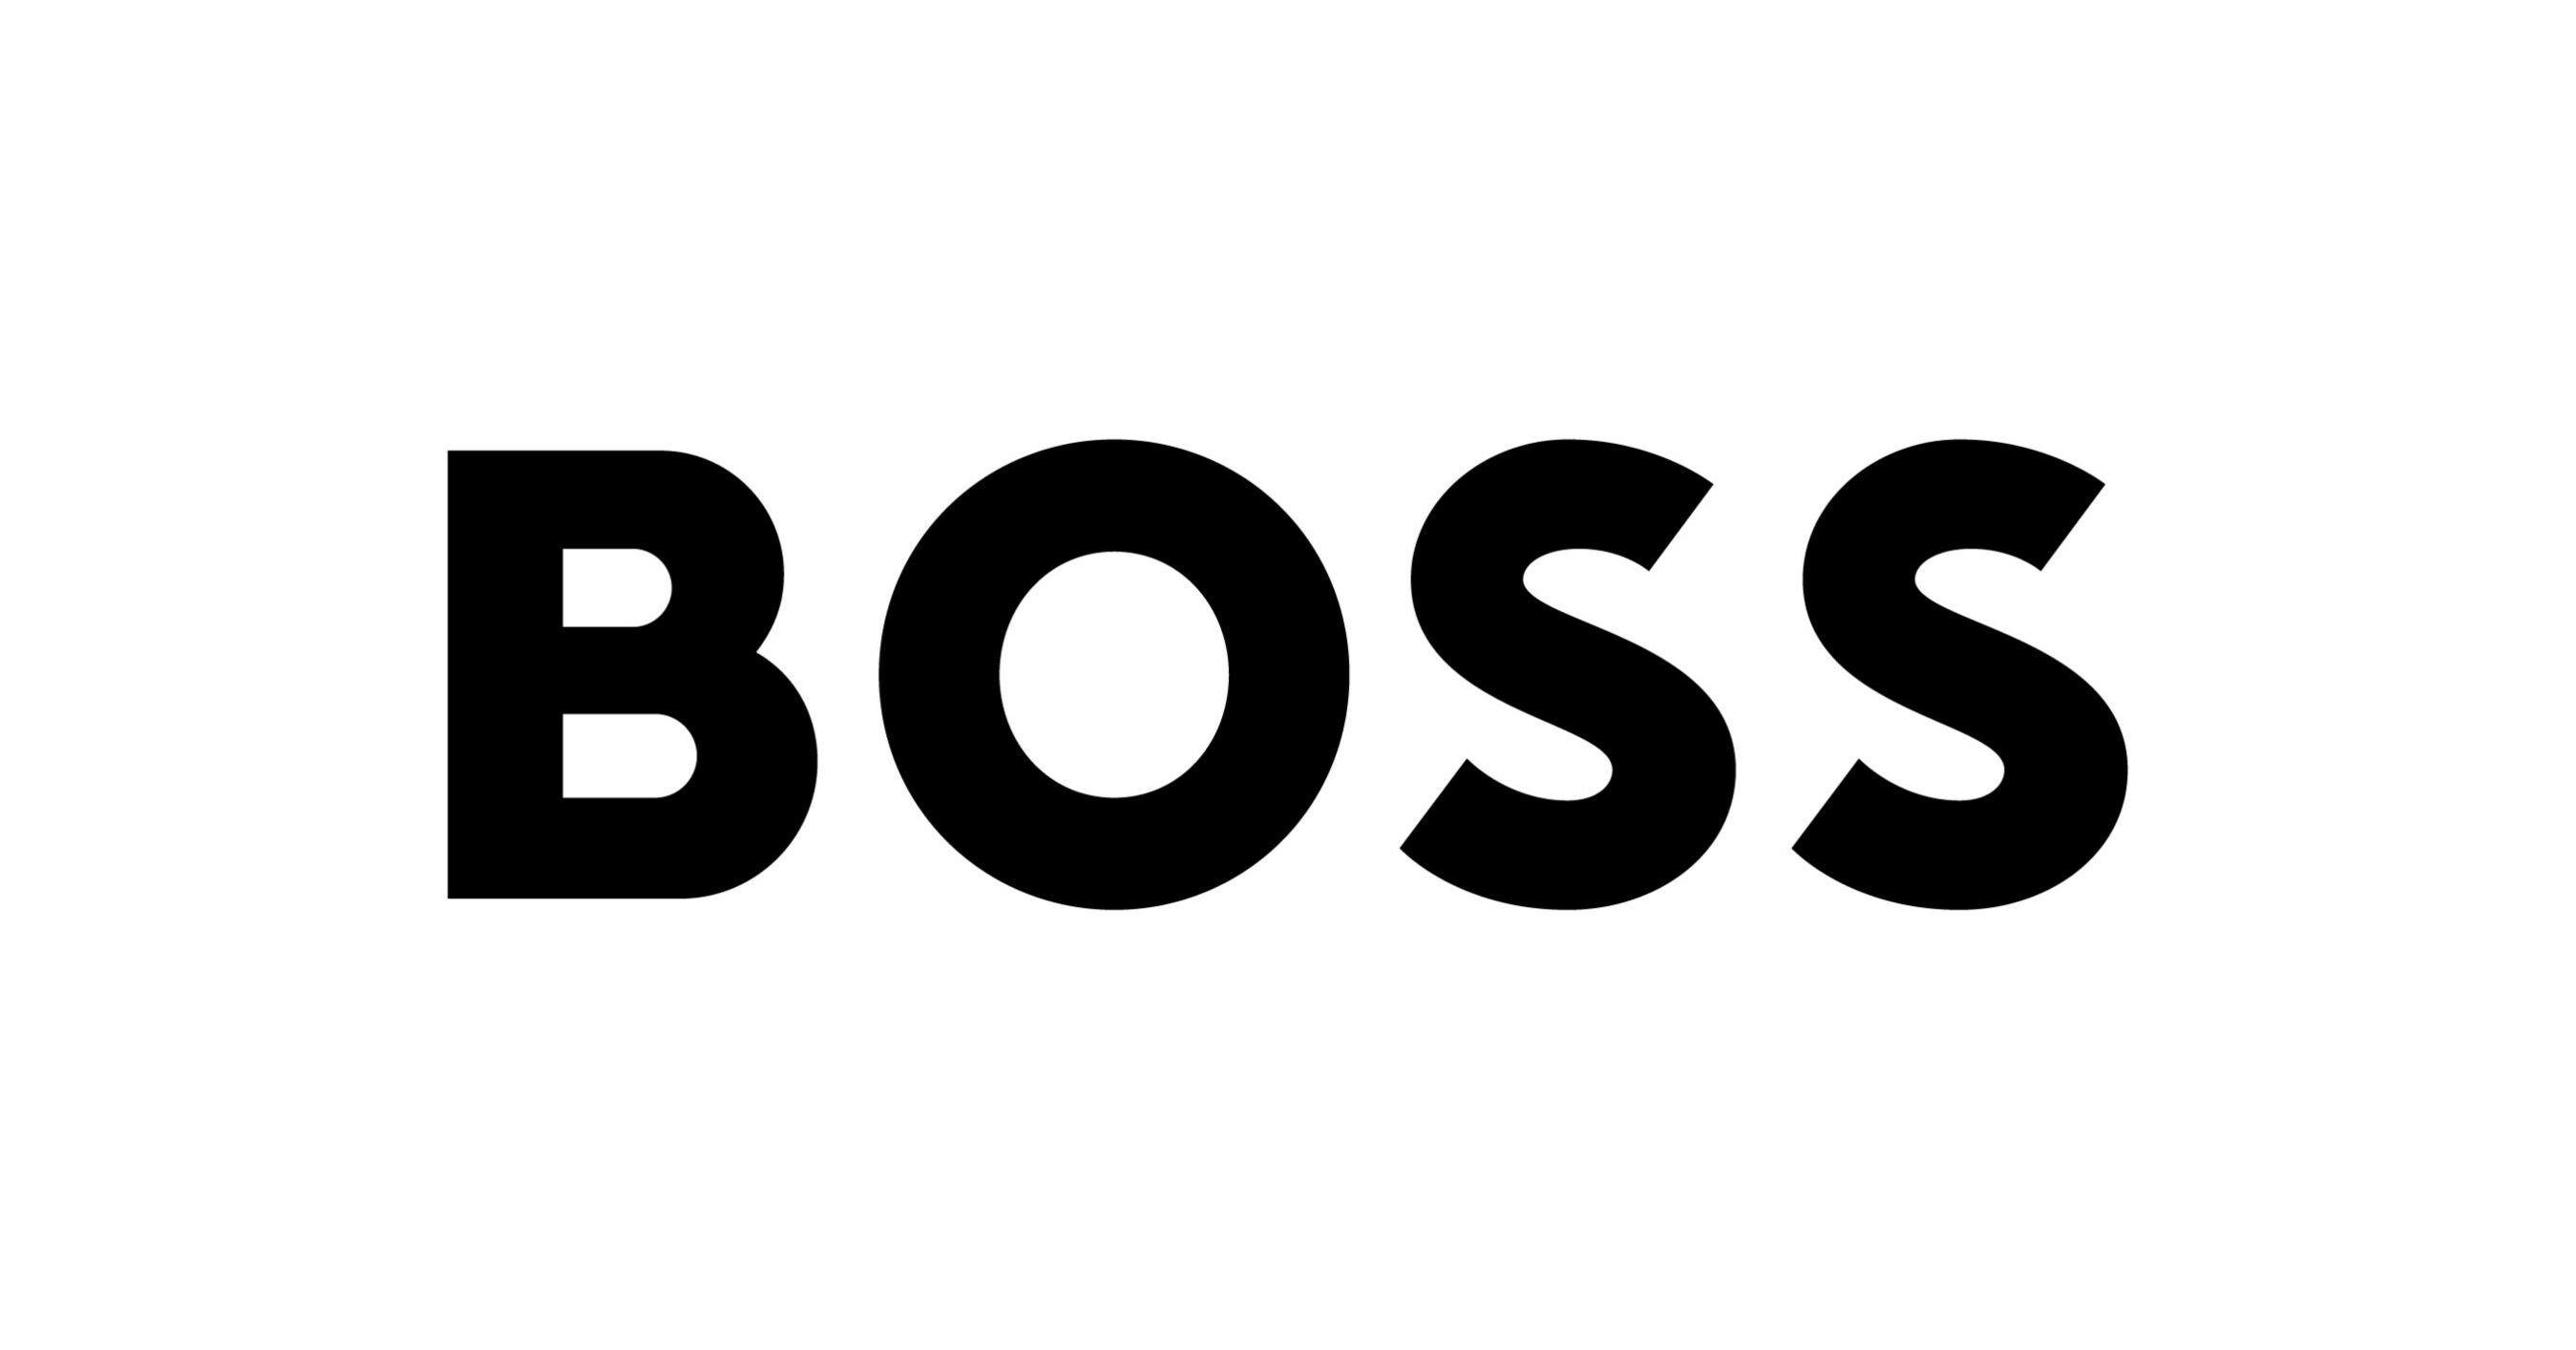 Hugo Boss adds NFC tags to baseball caps • NFCW